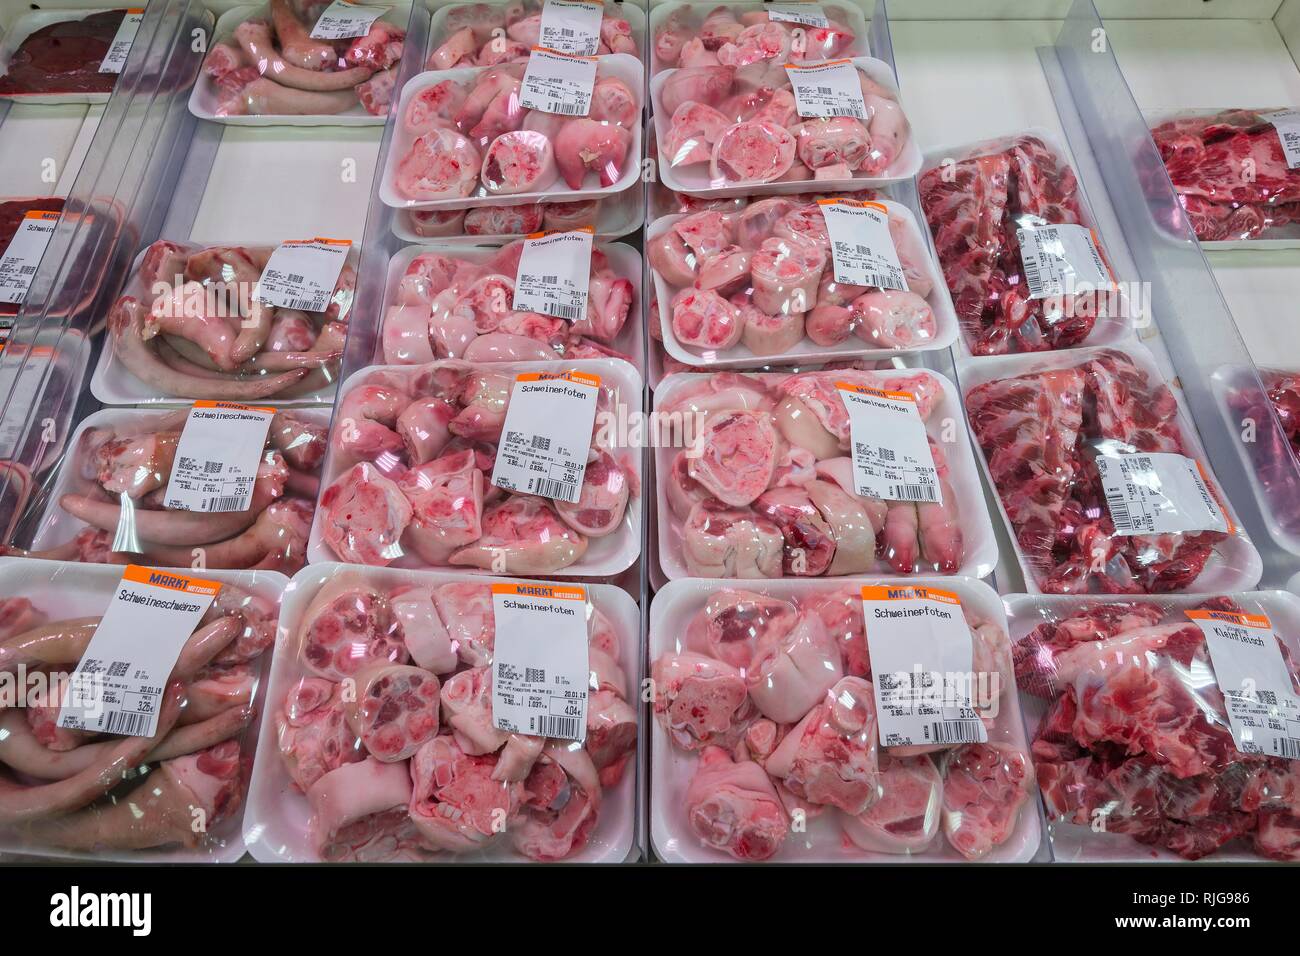 Rabo de cerdo, carne de cerdo patas y pequeño carne envasada en plástico en el supermercado, Munich, la Alta Baviera, Baviera, Alemania Foto de stock